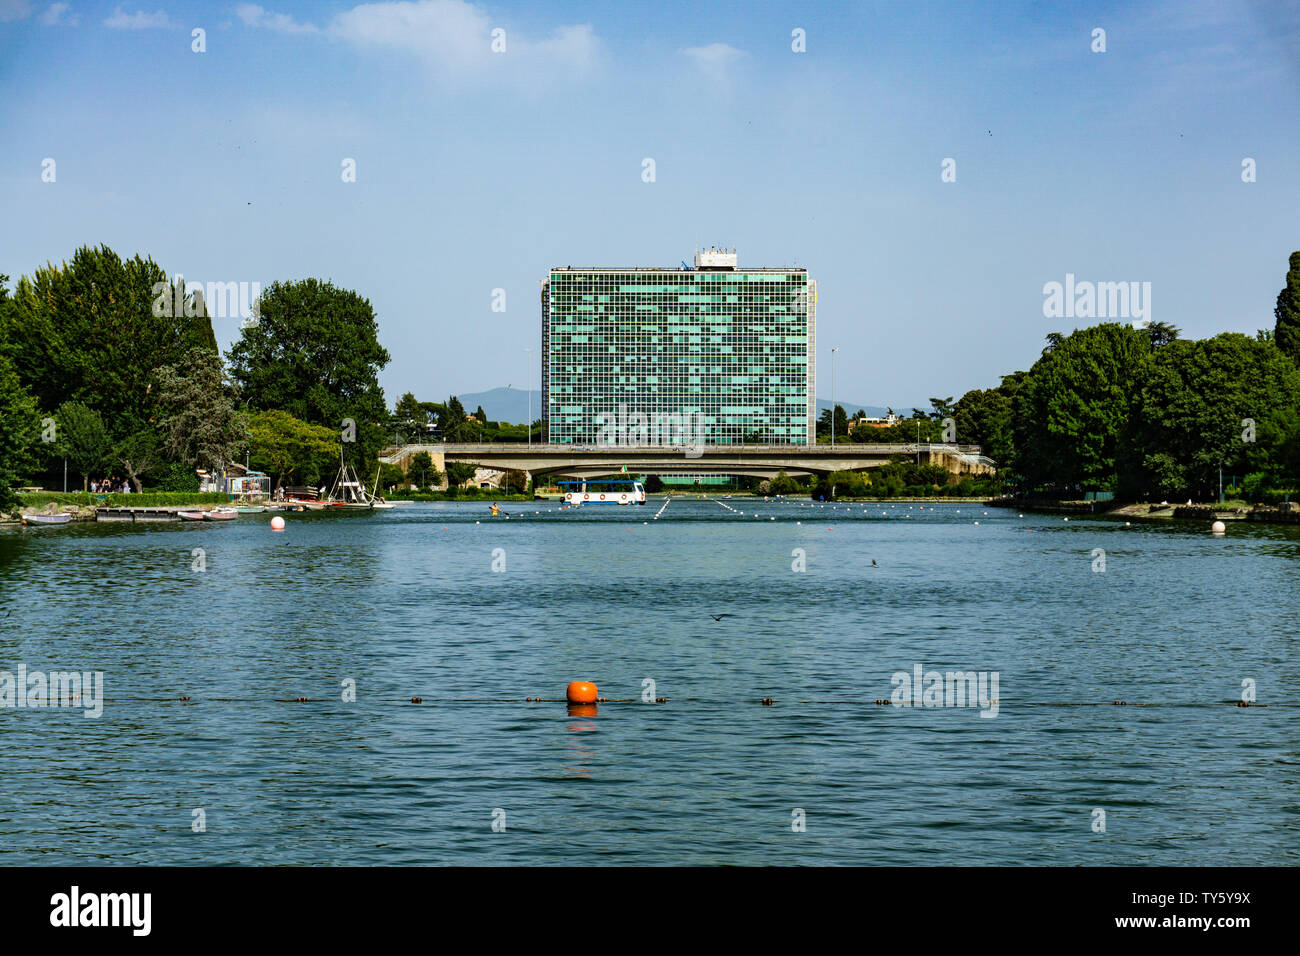 Vista panoramica sopra il lago artificiale nel quartiere EUR di Roma, Italia Foto Stock